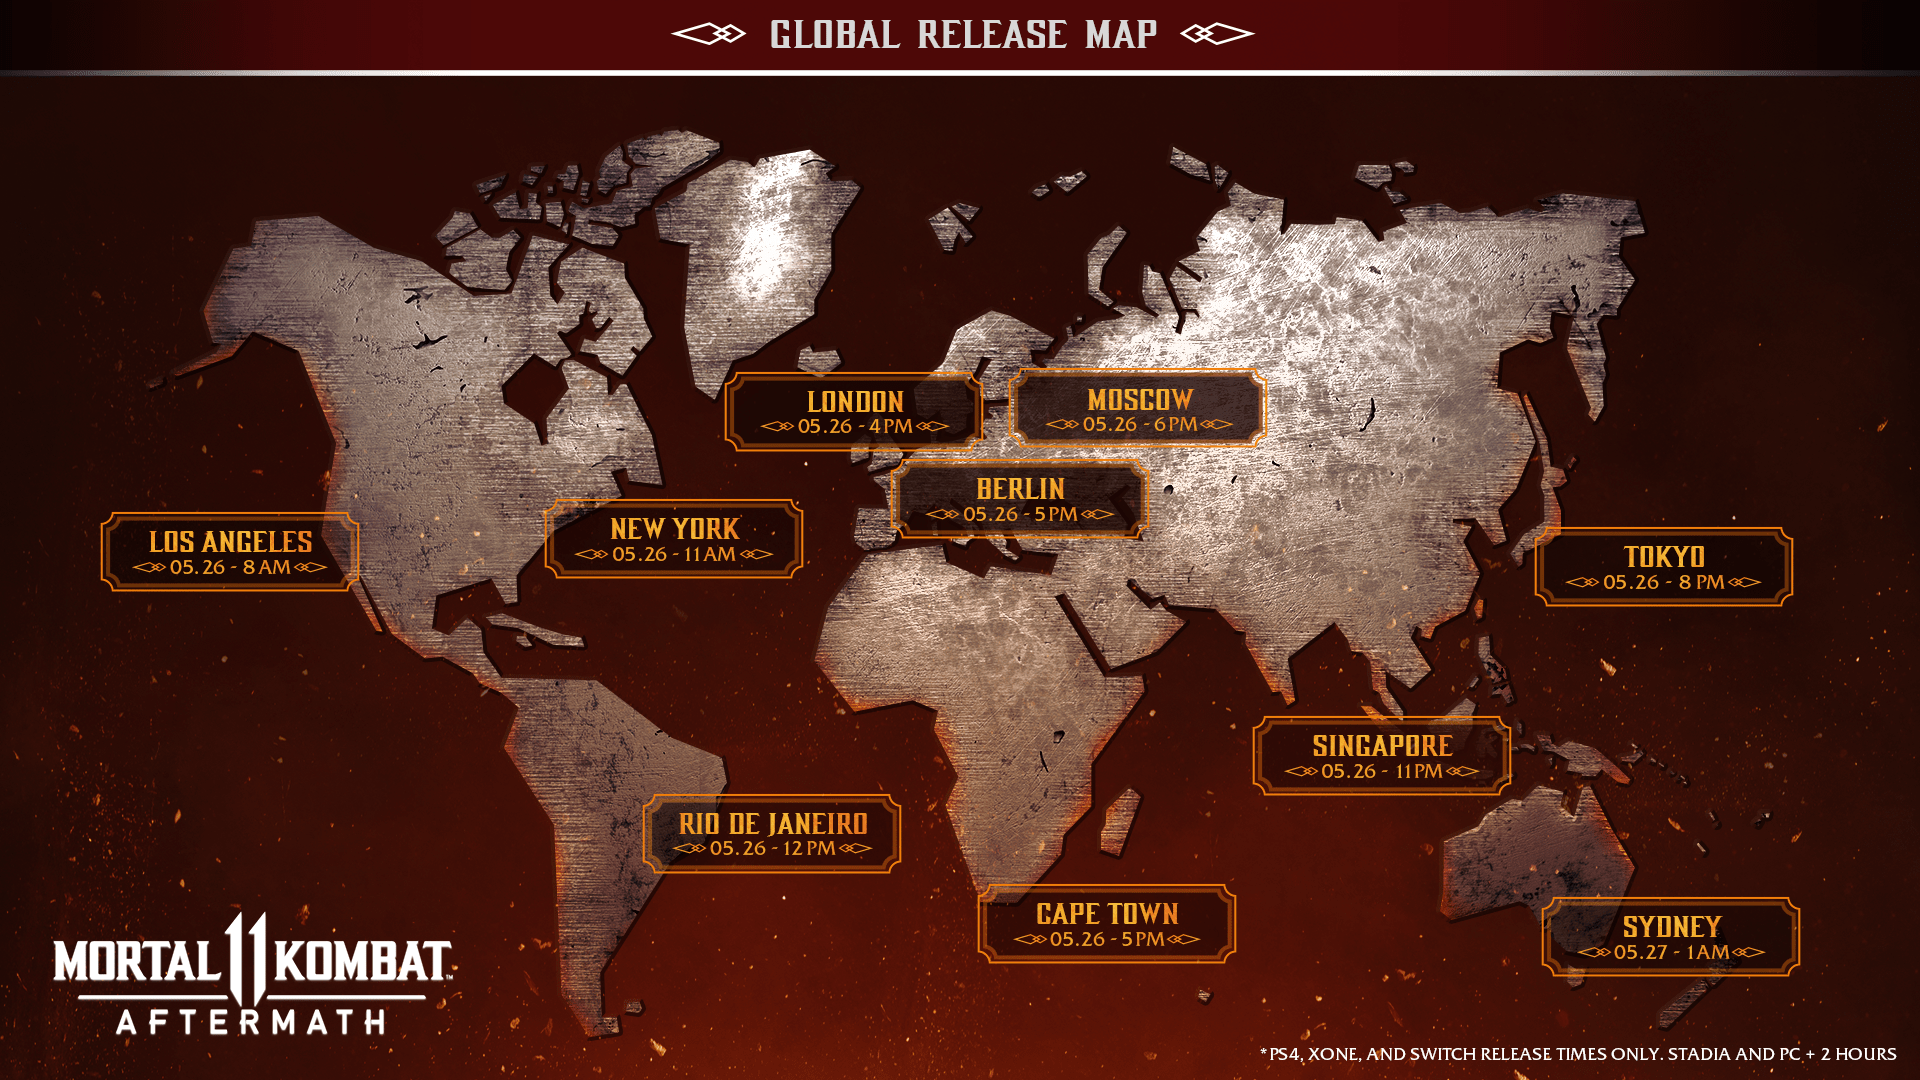 Mortal Kombat 11: Aftermath Launch Details